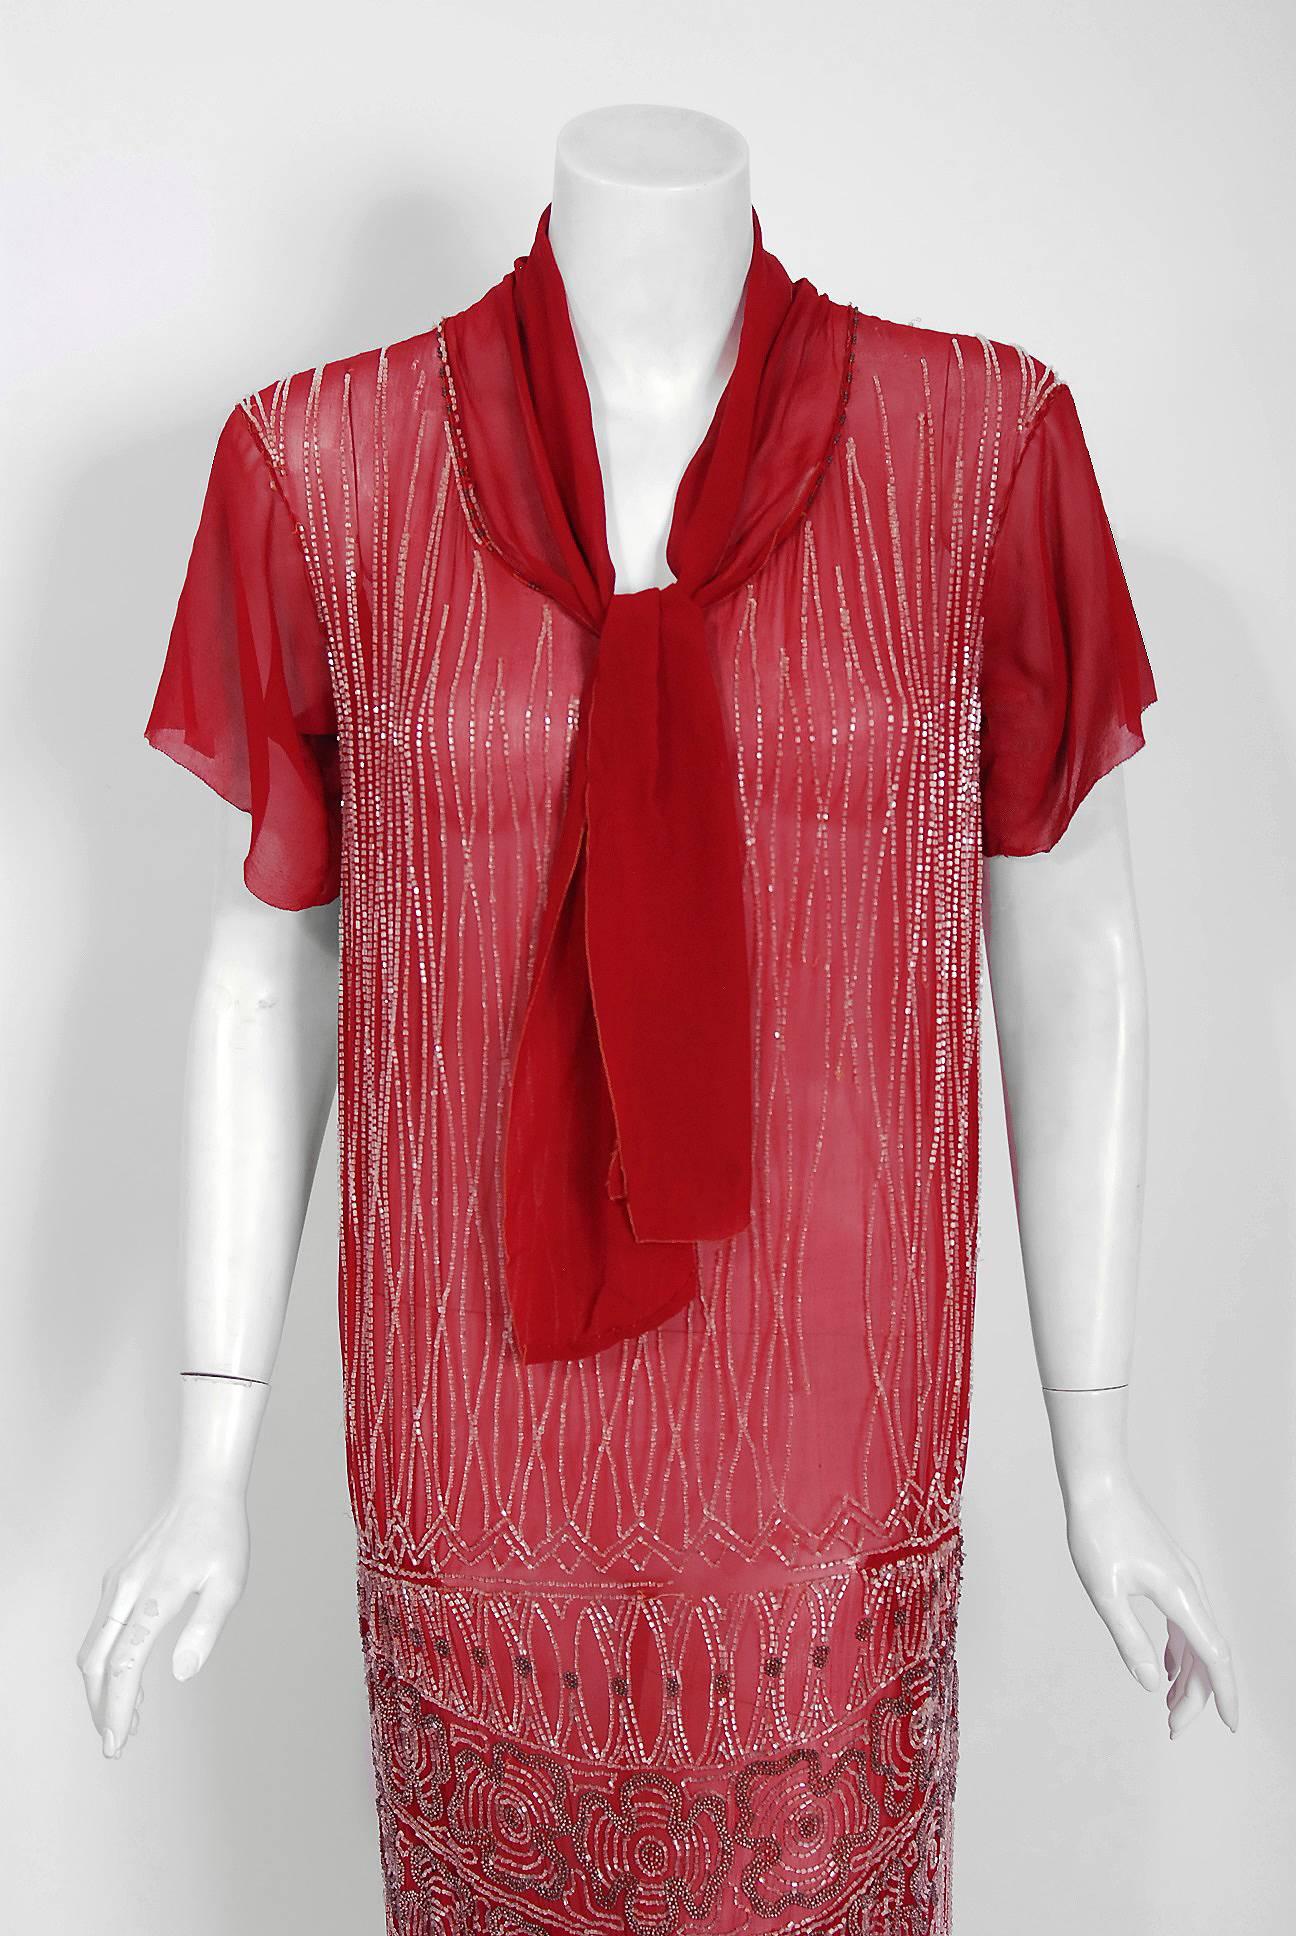 Rouge Robe de soirée vintage couture rouge bourgogne perlée en soie transparente avec nœud de foulard, années 1920